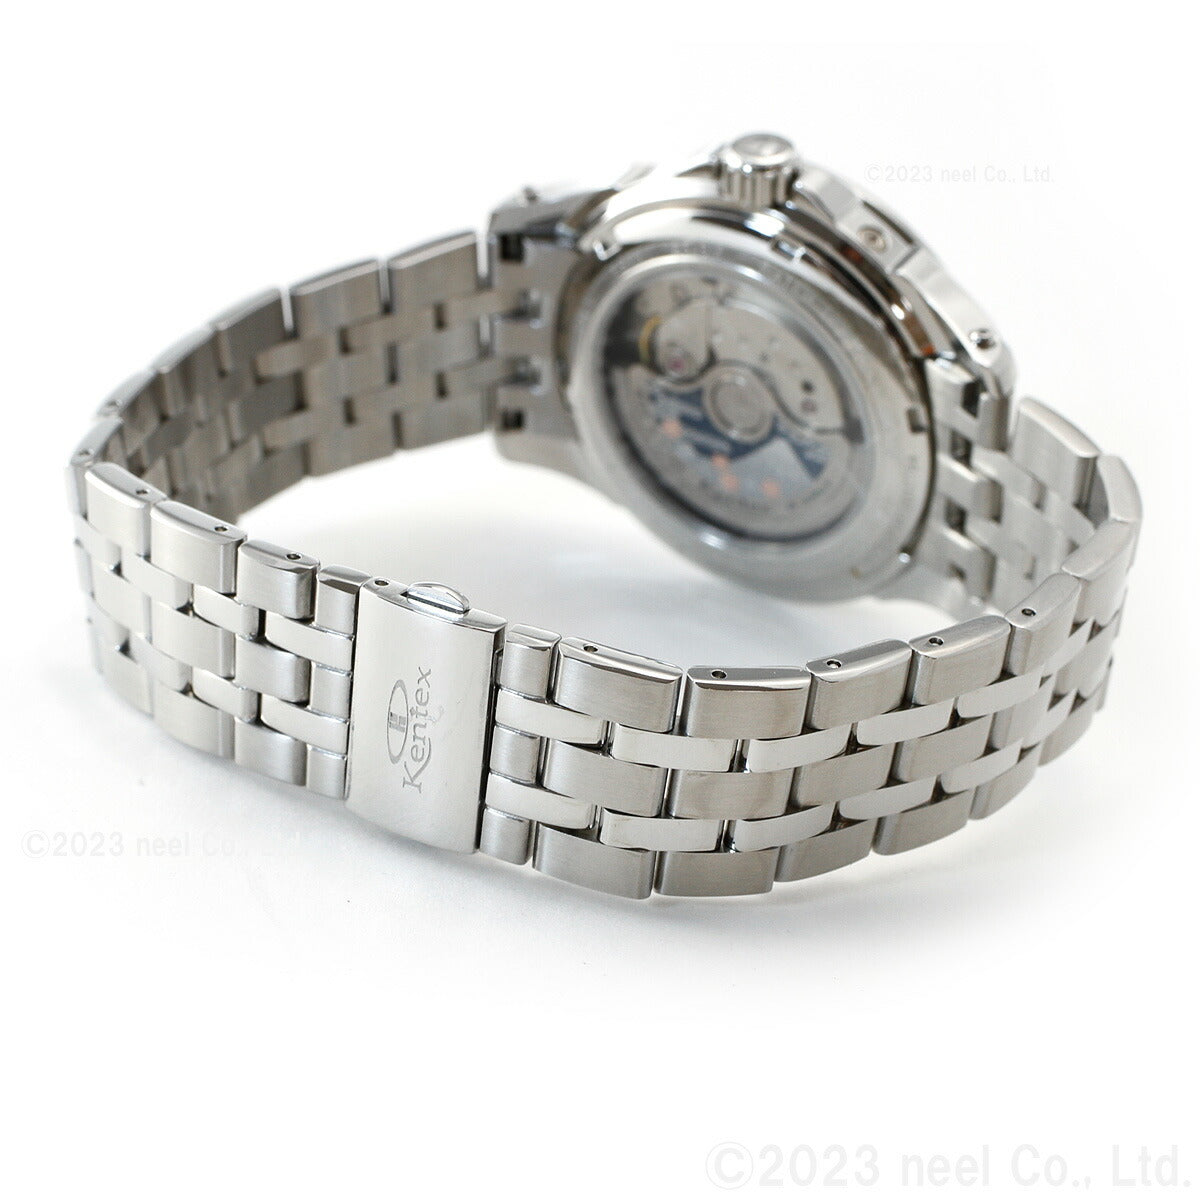 ケンテックス KENTEX 腕時計 時計 メンズ 日本製 自動巻き マルチファンクション エスパイ アクティブ2 ESPY ACTIVE II E546M-9 ブラック